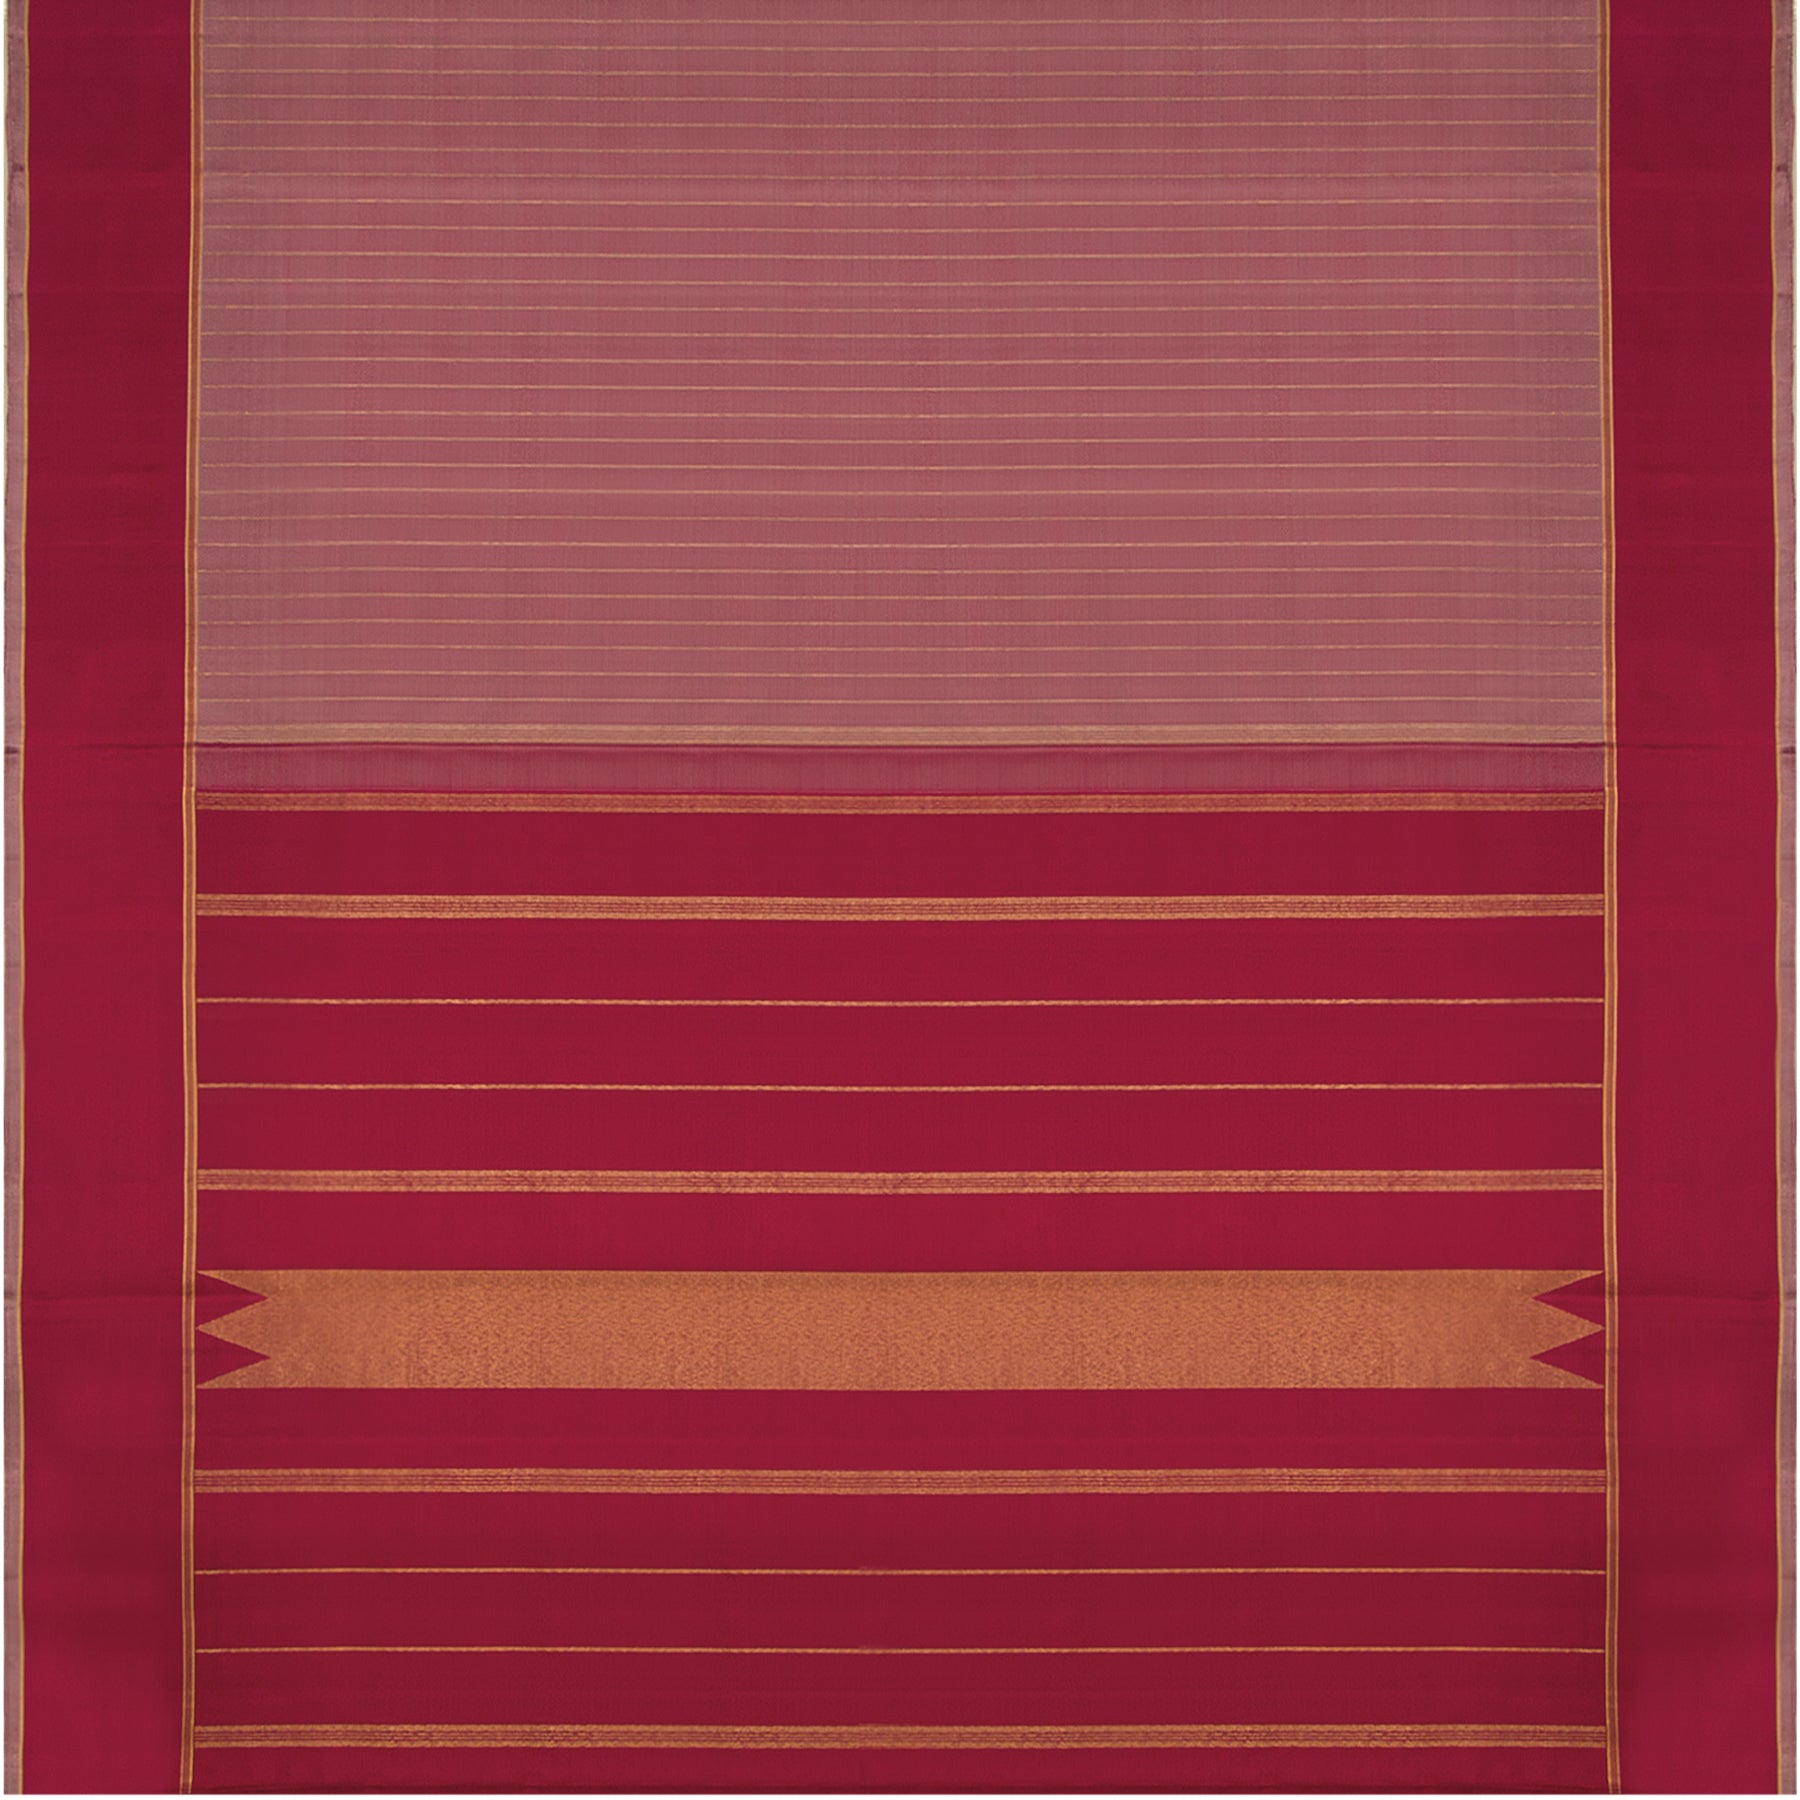 Kanakavalli Kanjivaram Silk Sari 23-595-HS001-01761 - Full View